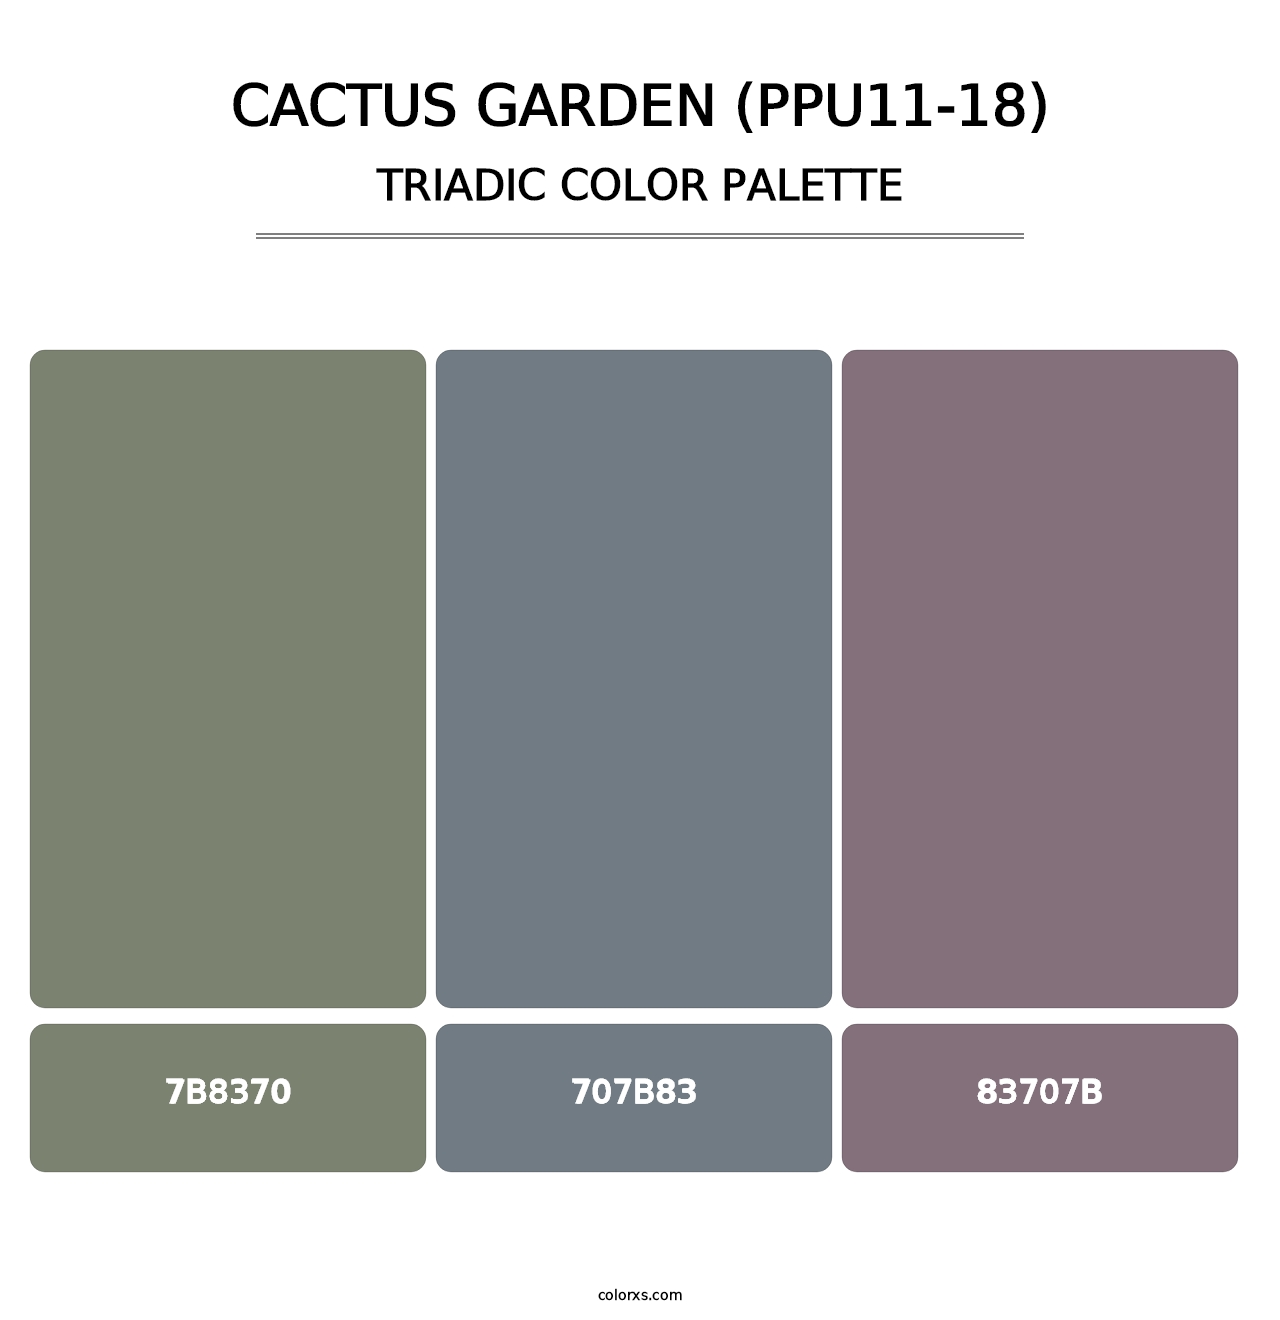 Cactus Garden (PPU11-18) - Triadic Color Palette